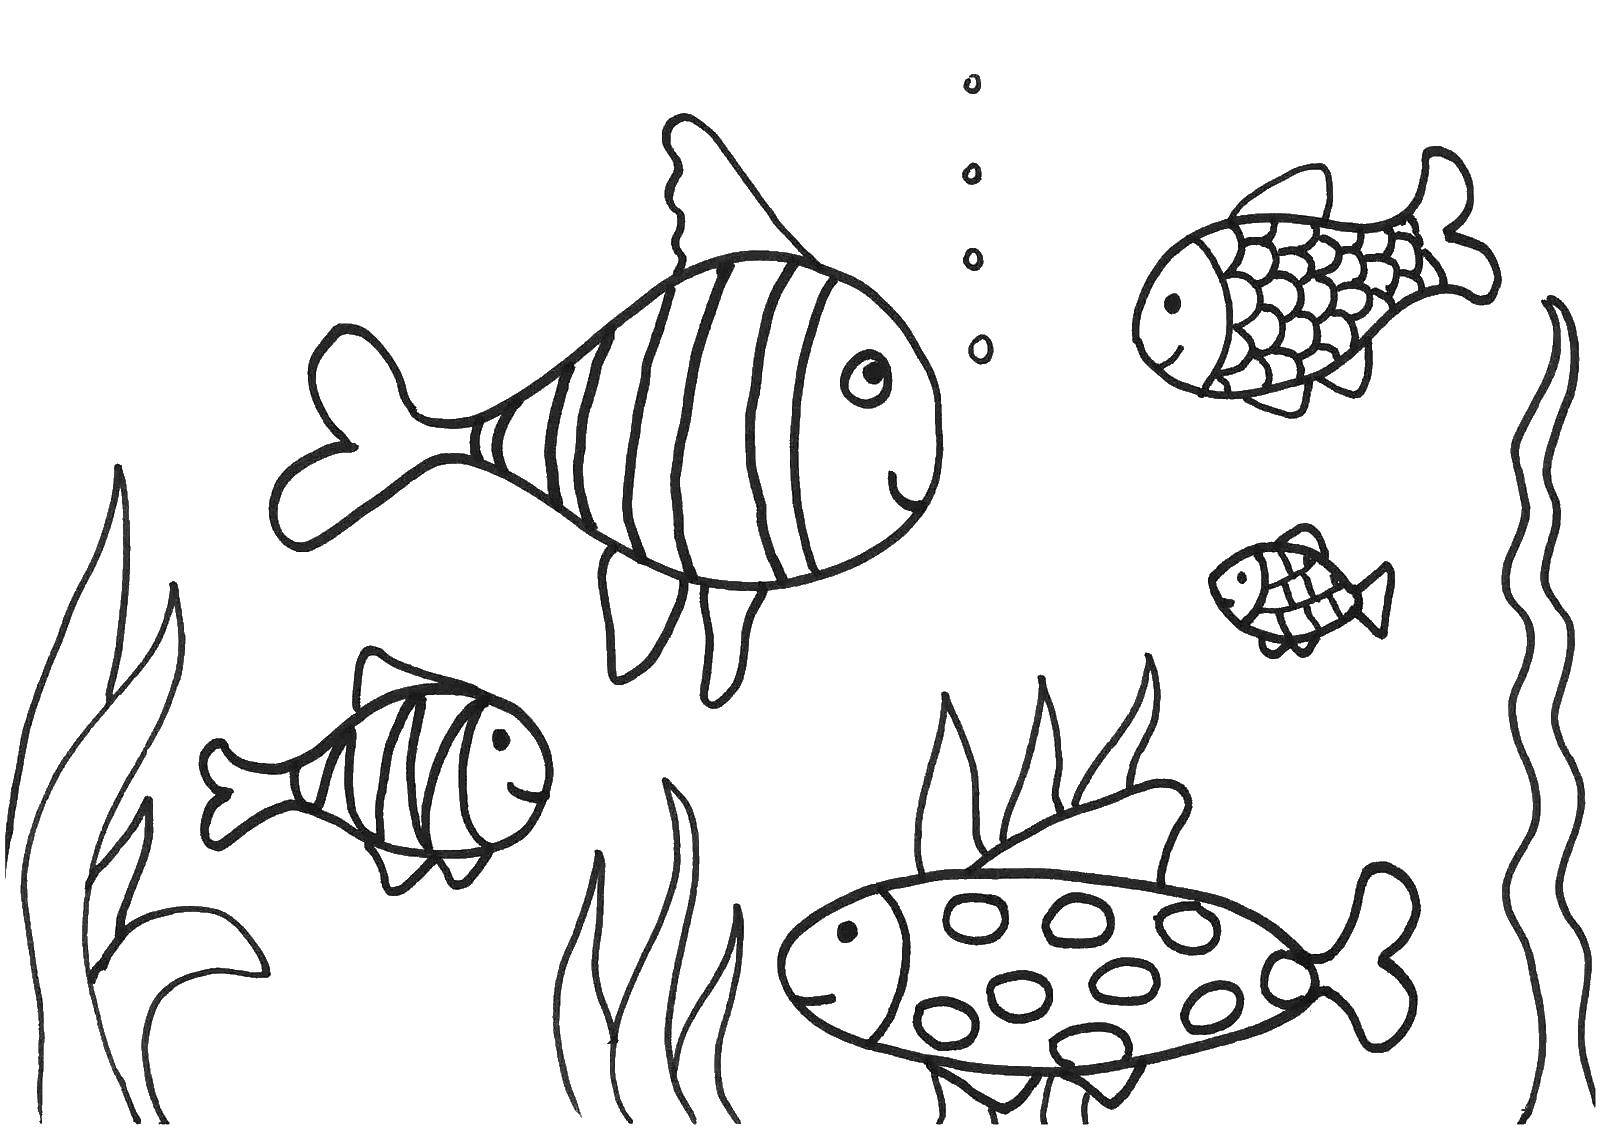 Название: Раскраска Рыбки. Категория: Рыбы. Теги: рыбы, водоросли, пузыри.